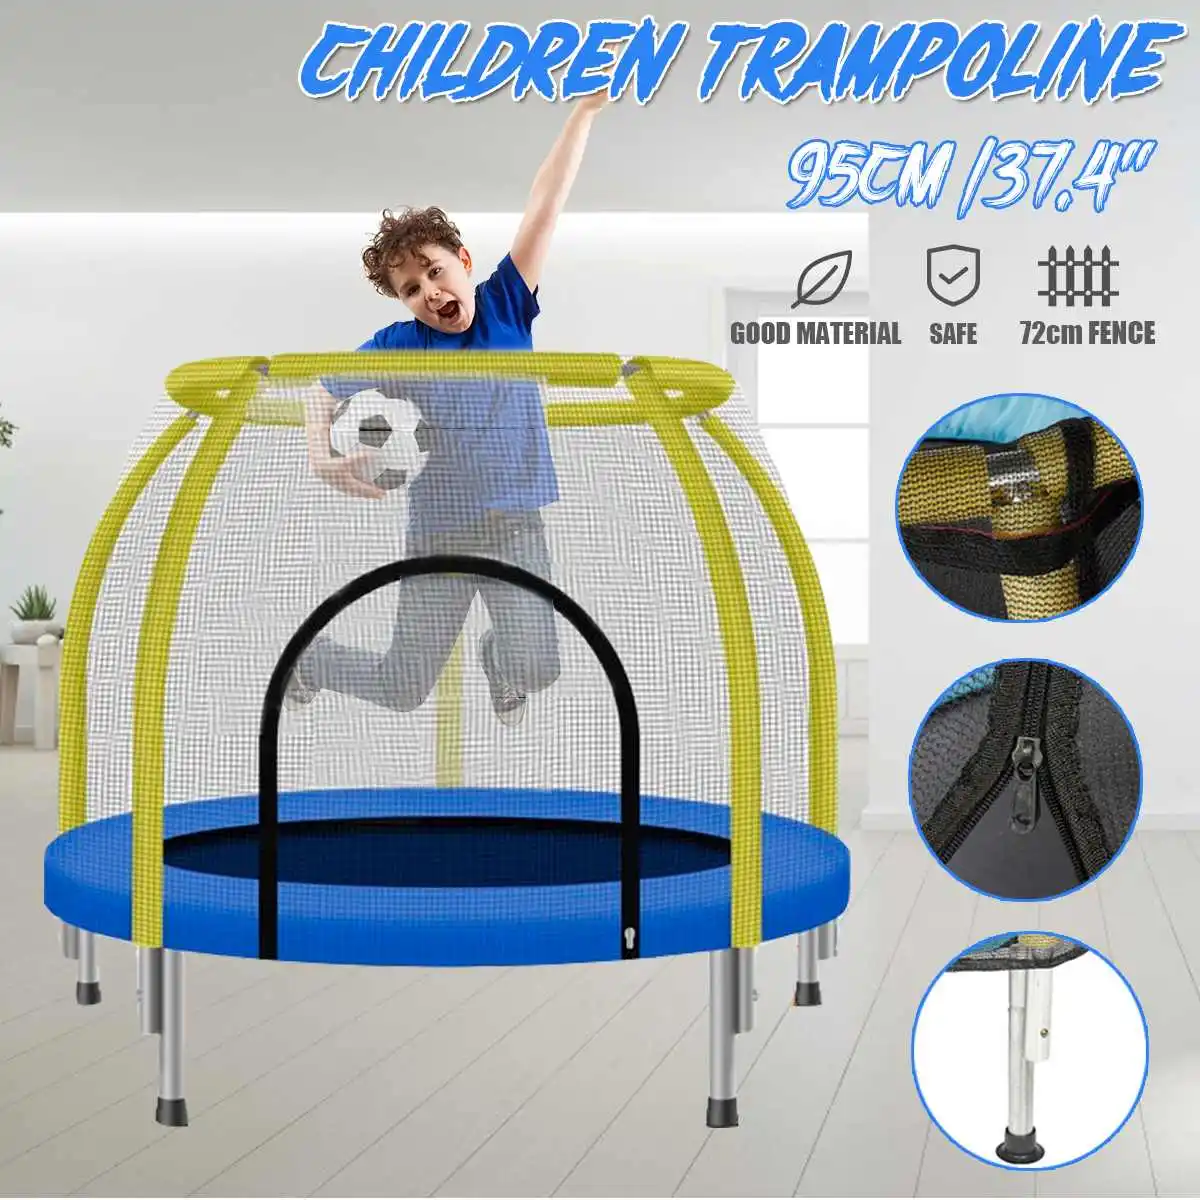 

Детский комнатный батут, круглый батут с защитной сеткой, для взрослых и детей, для фитнеса, для прыжков, для дома, спортивное оборудование